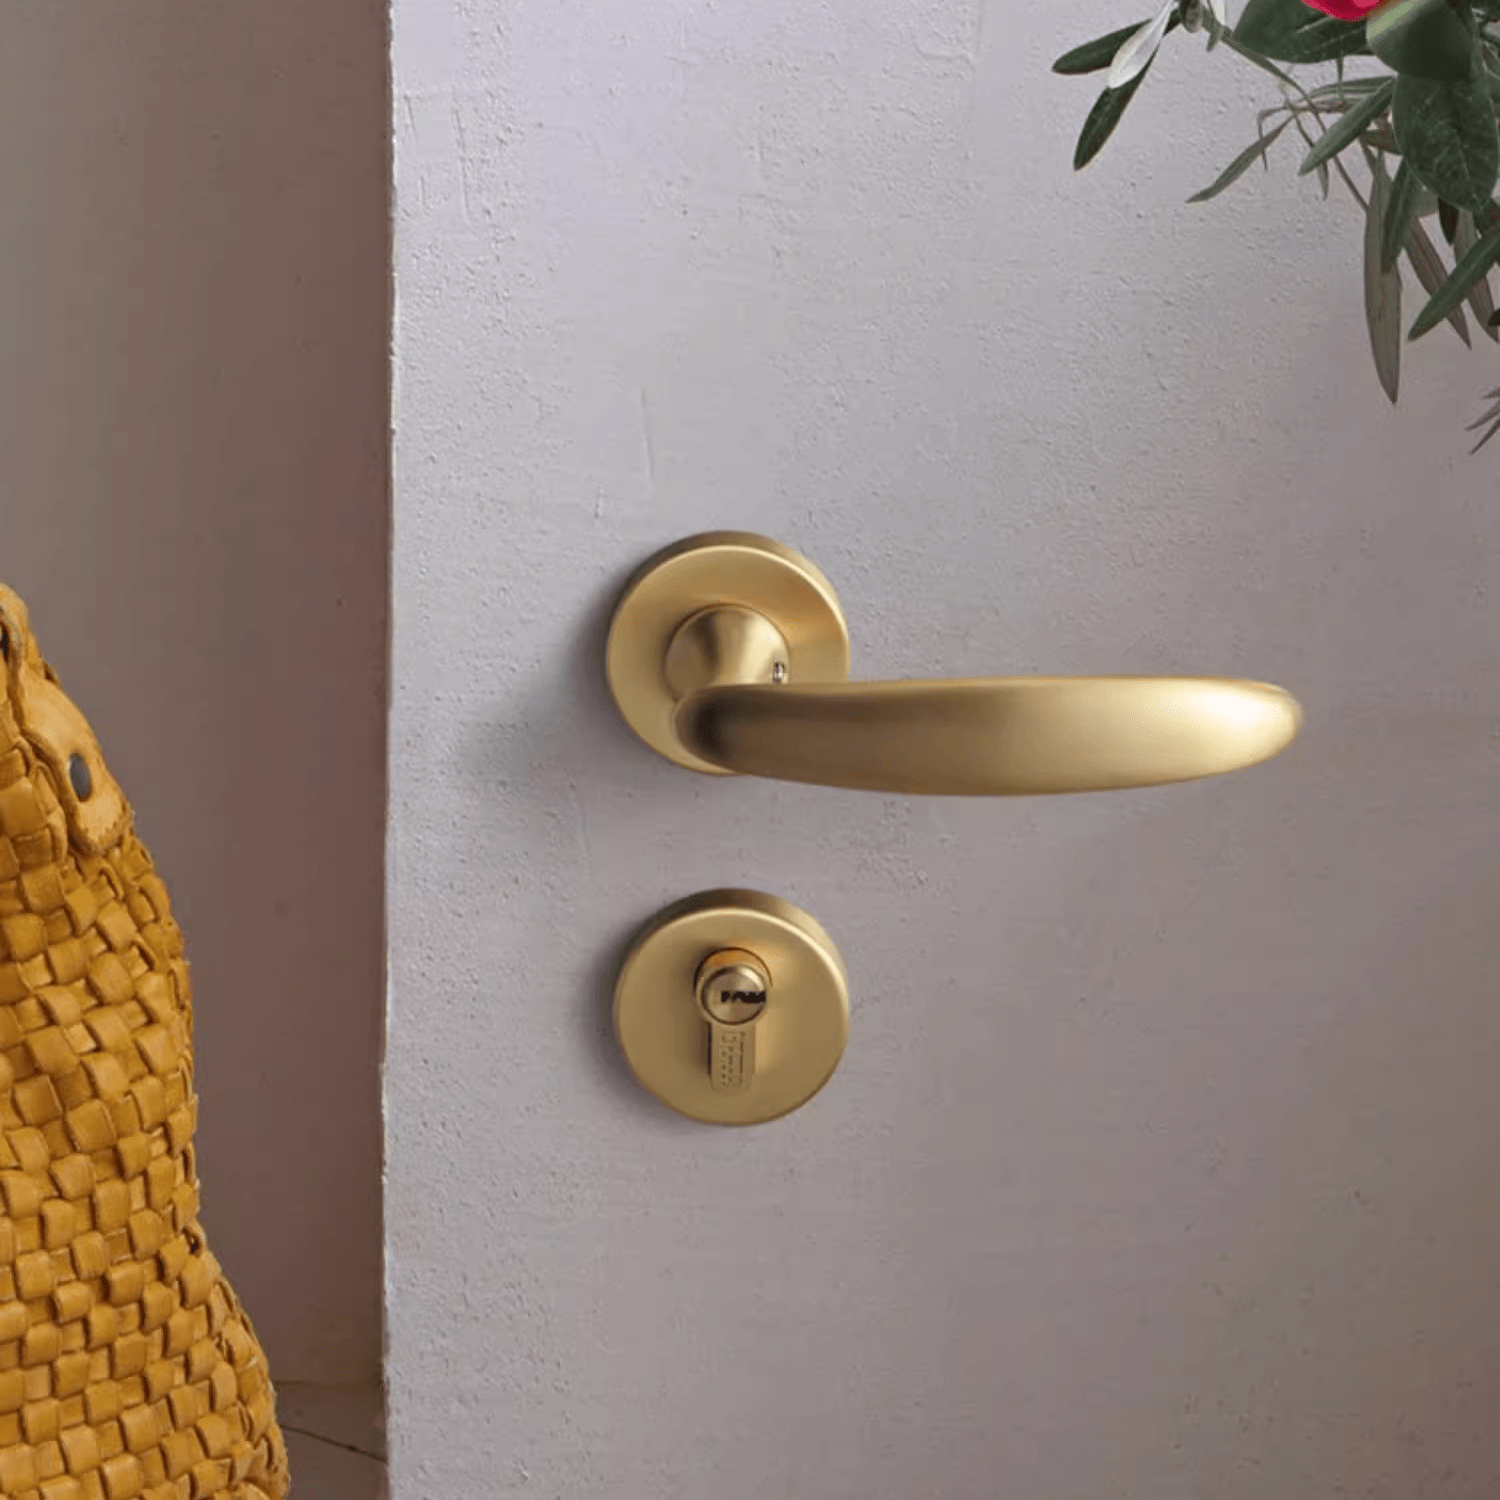 Goo-Ki Pure Copper Natural Antibacte Luxury Bedroom Door Lock Set